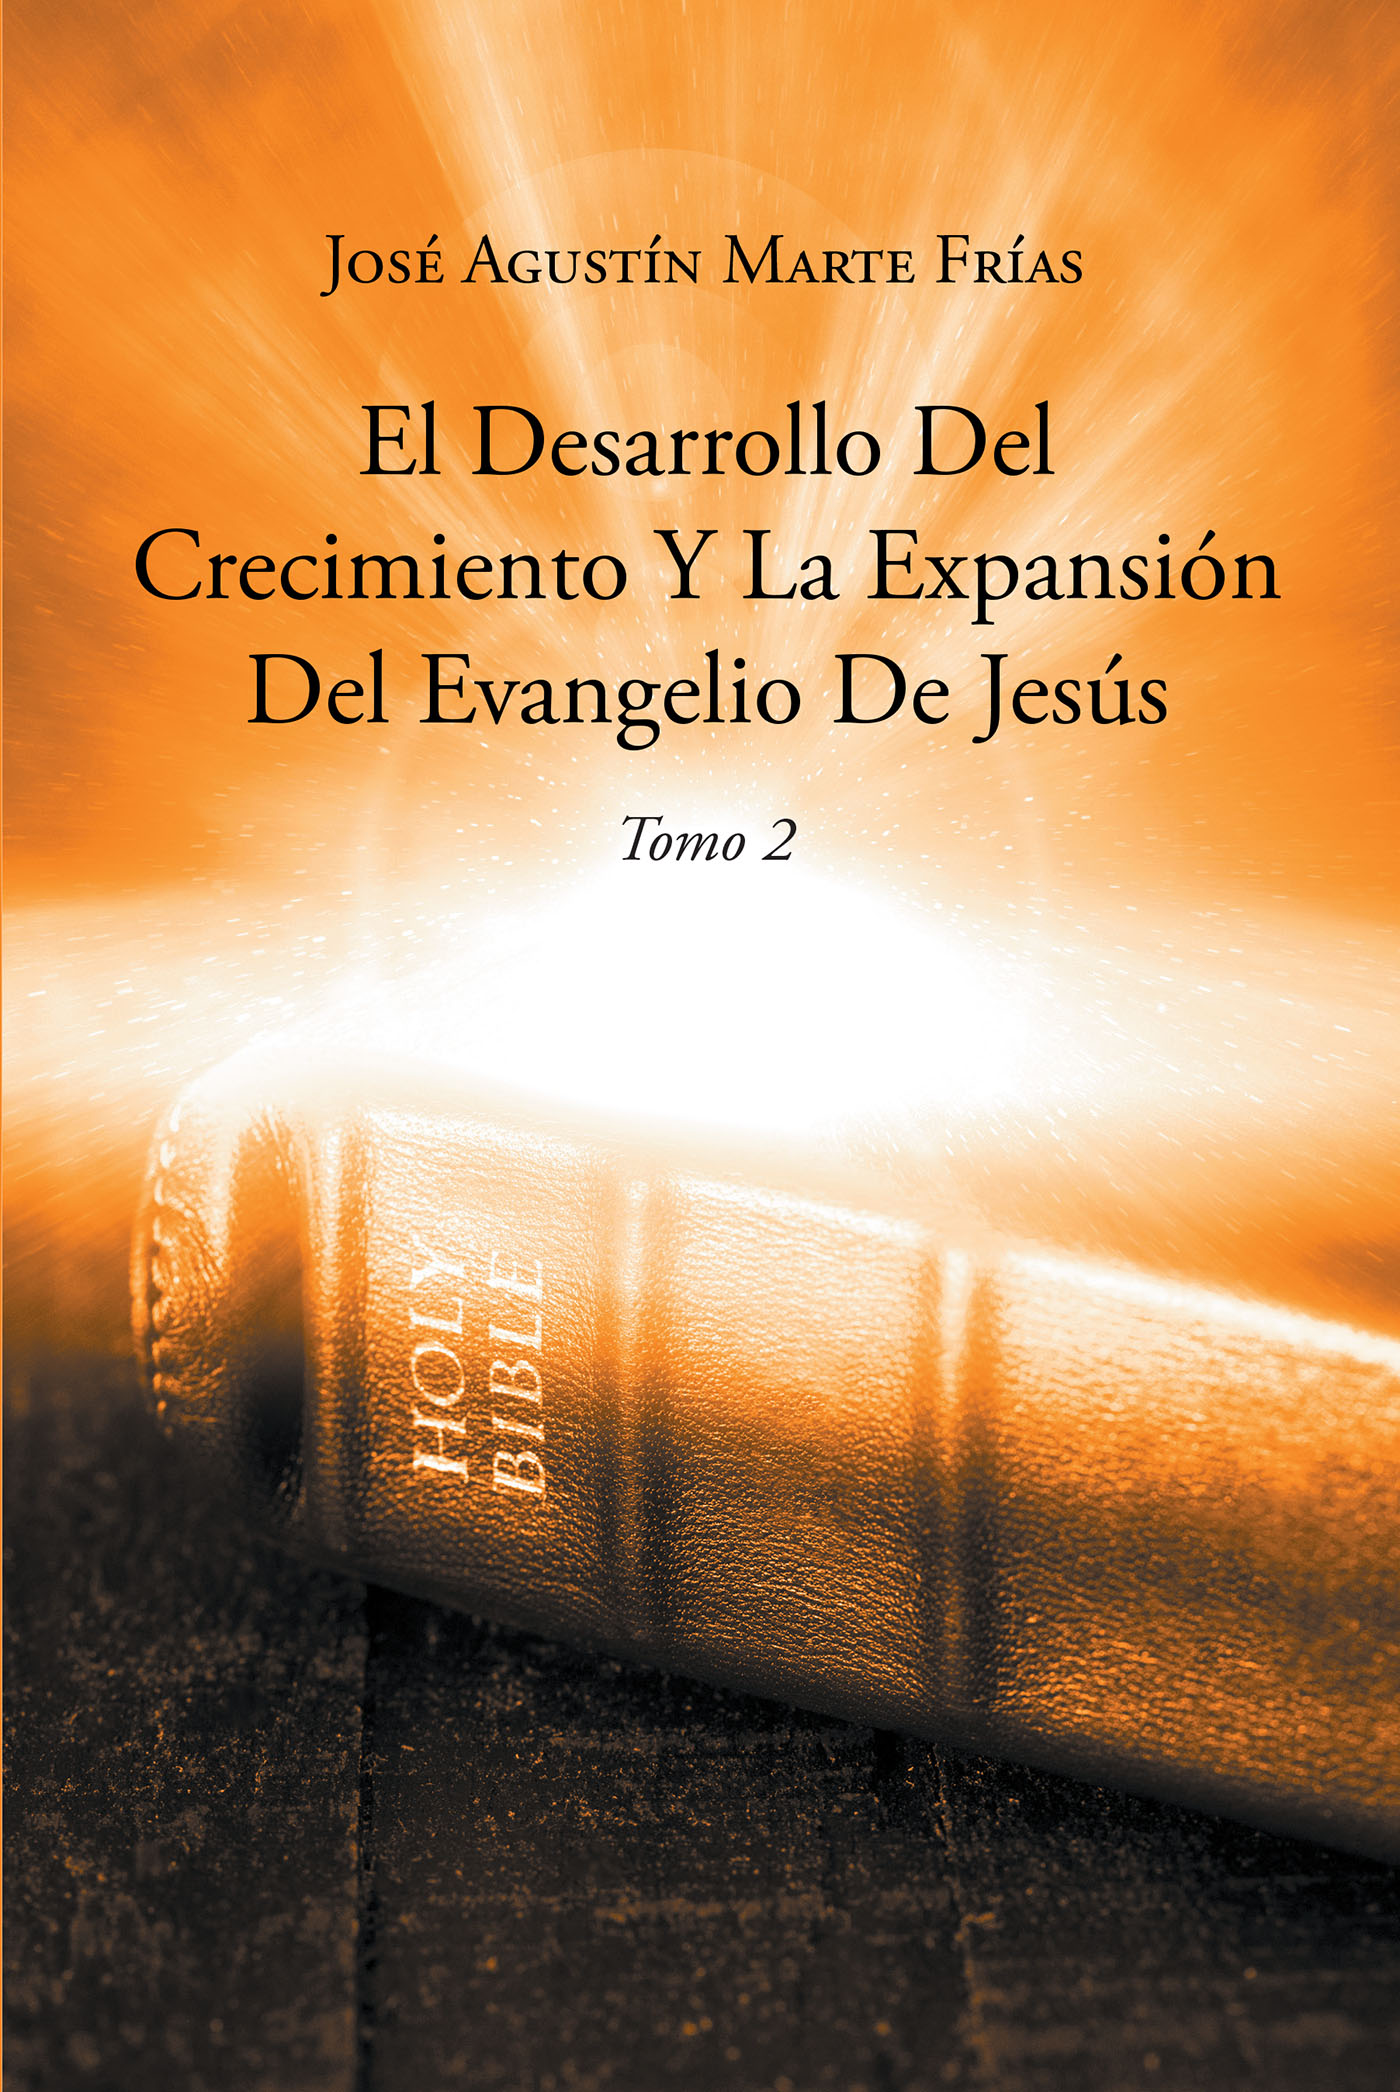 El Desarrollo Del Crecimiento Y La Expansión Del Evangelio De Jesús Cover Image